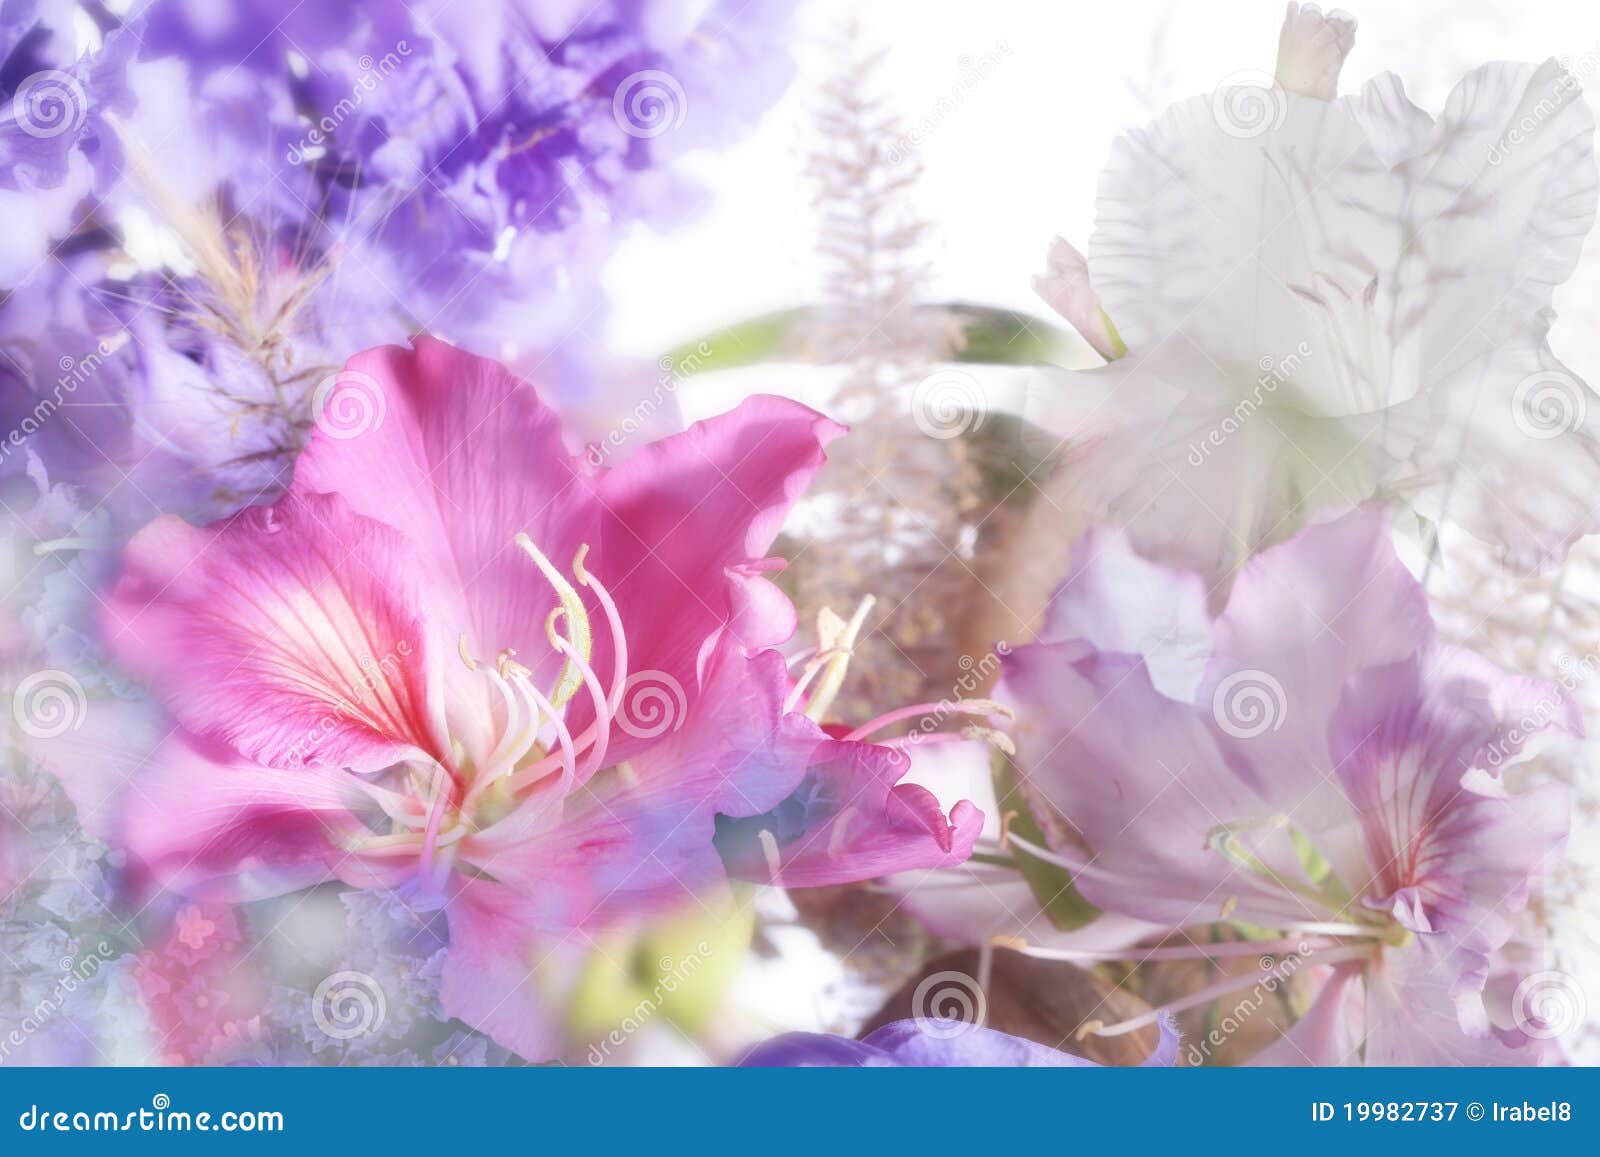 Flores exóticas hermosas imagen de archivo. Imagen de extracto - 19982737